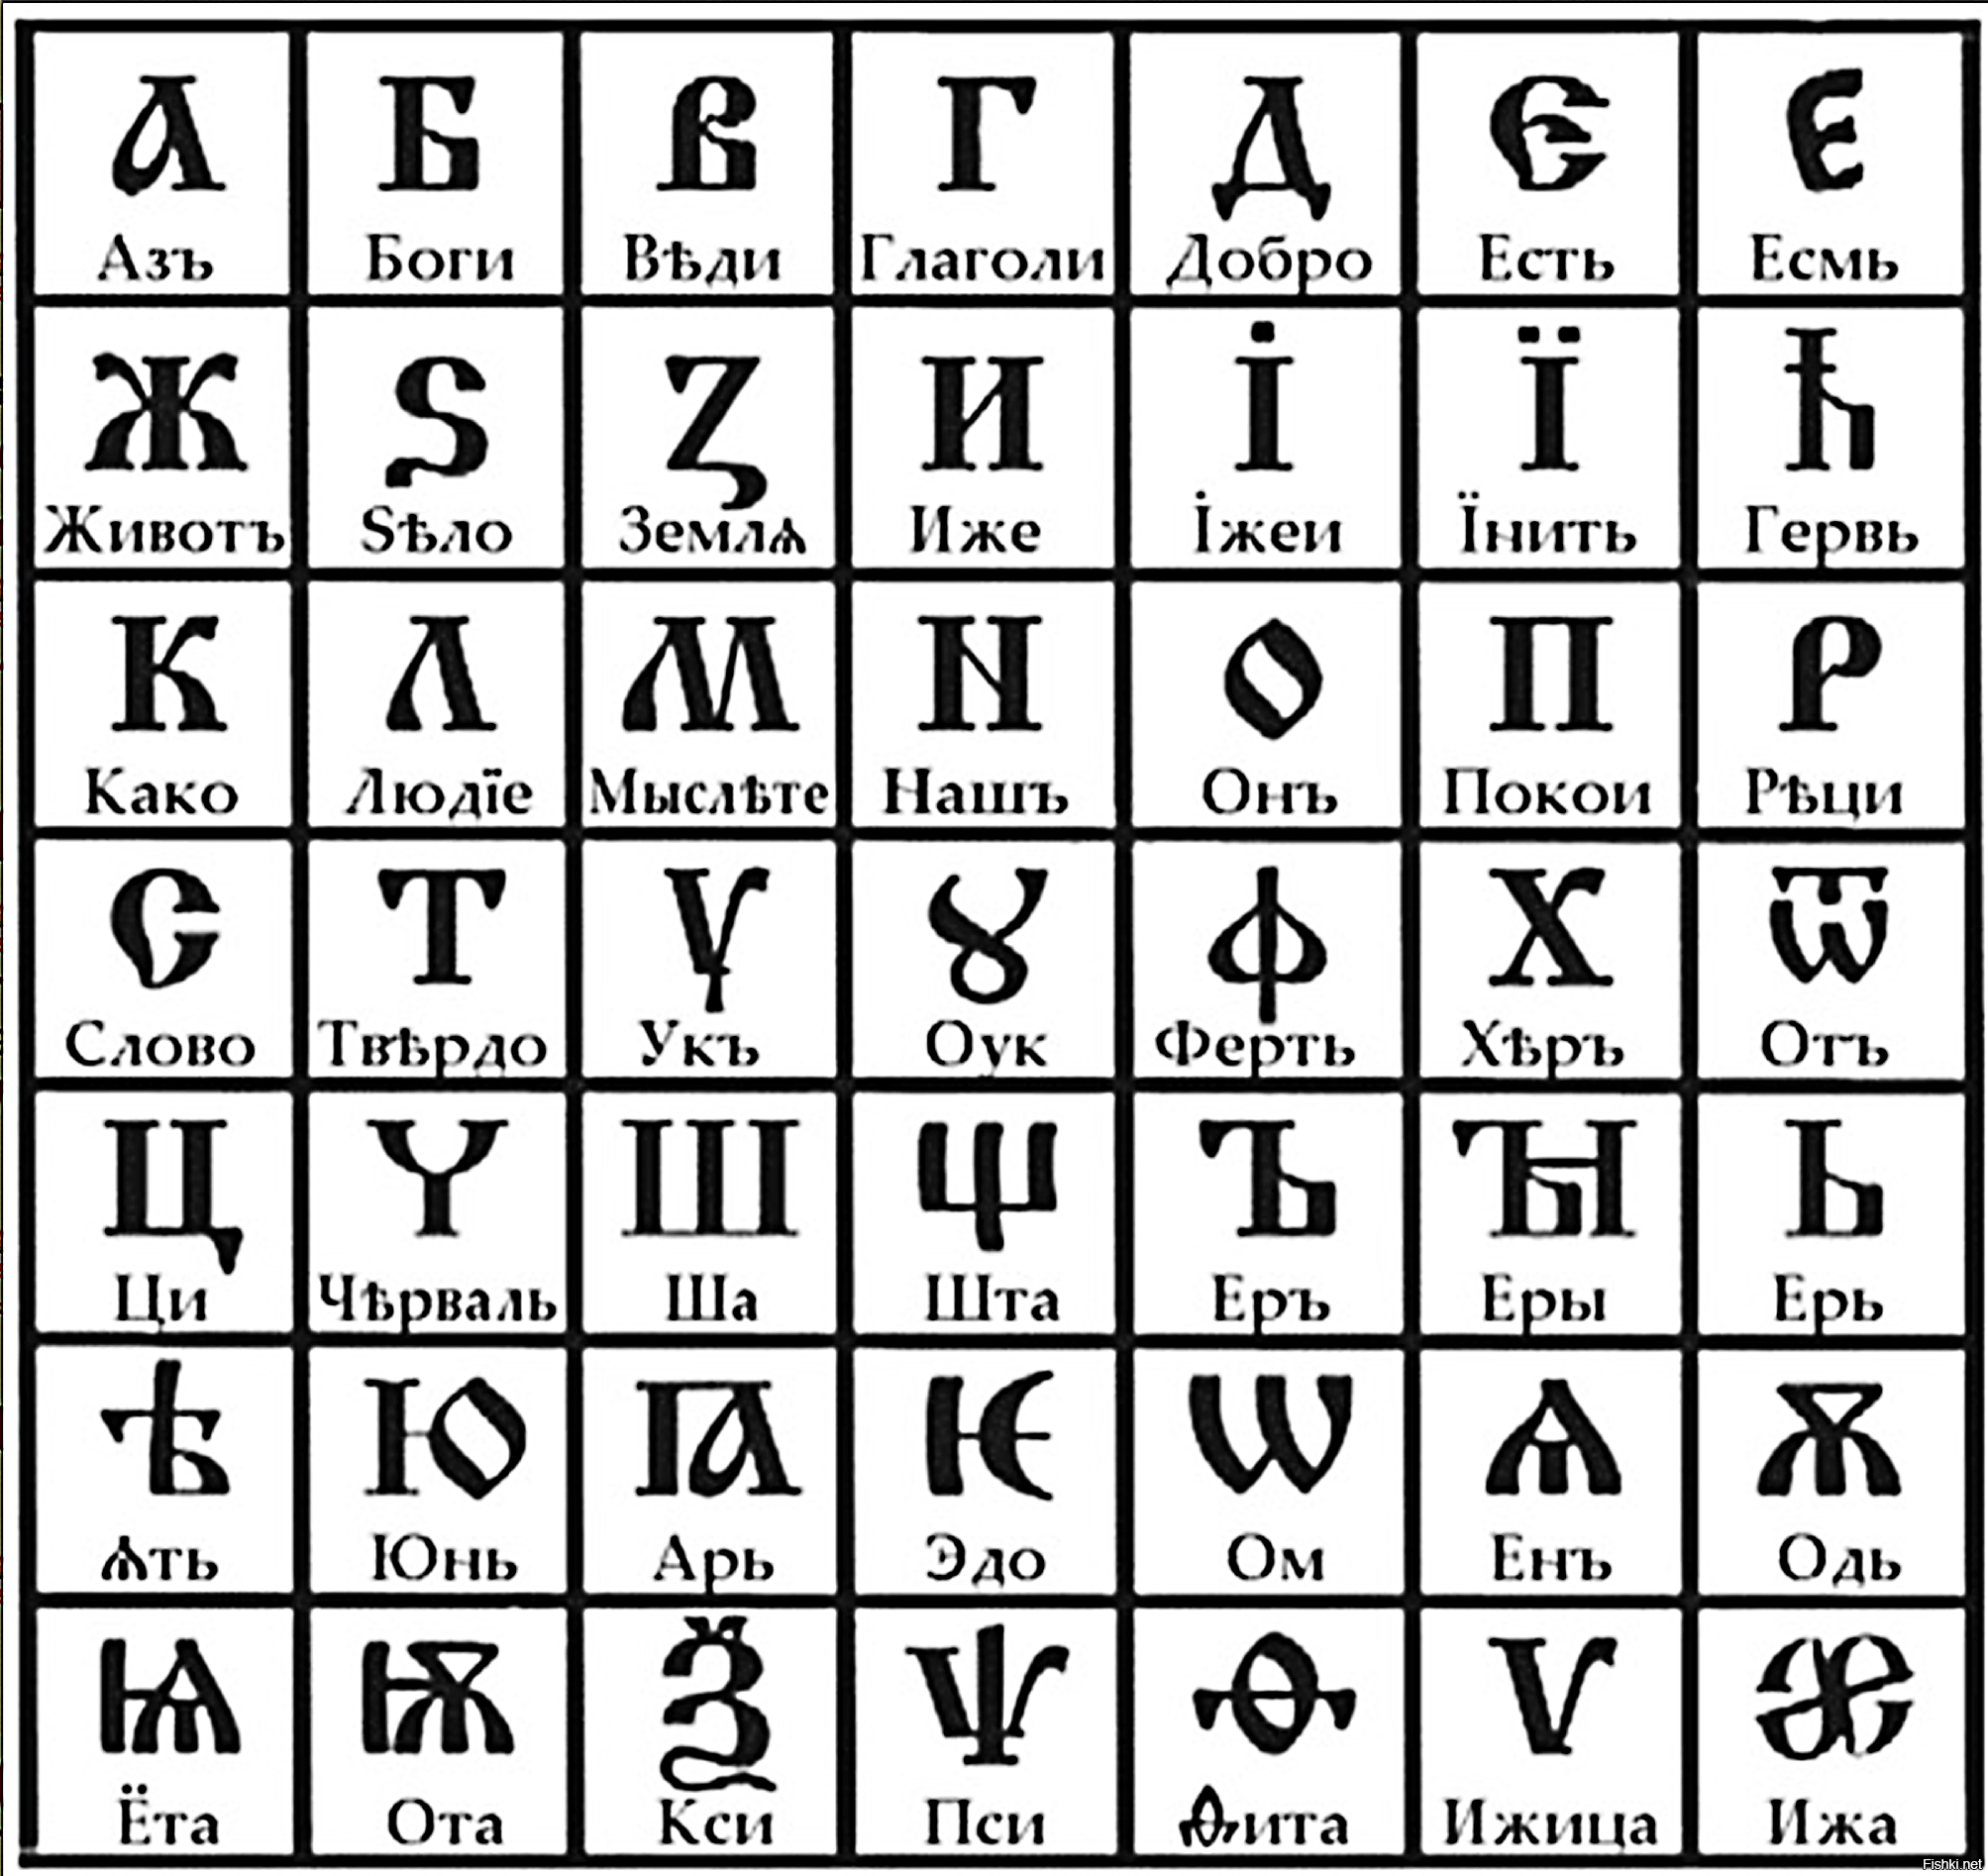 Алфавит древнерусский Славянский